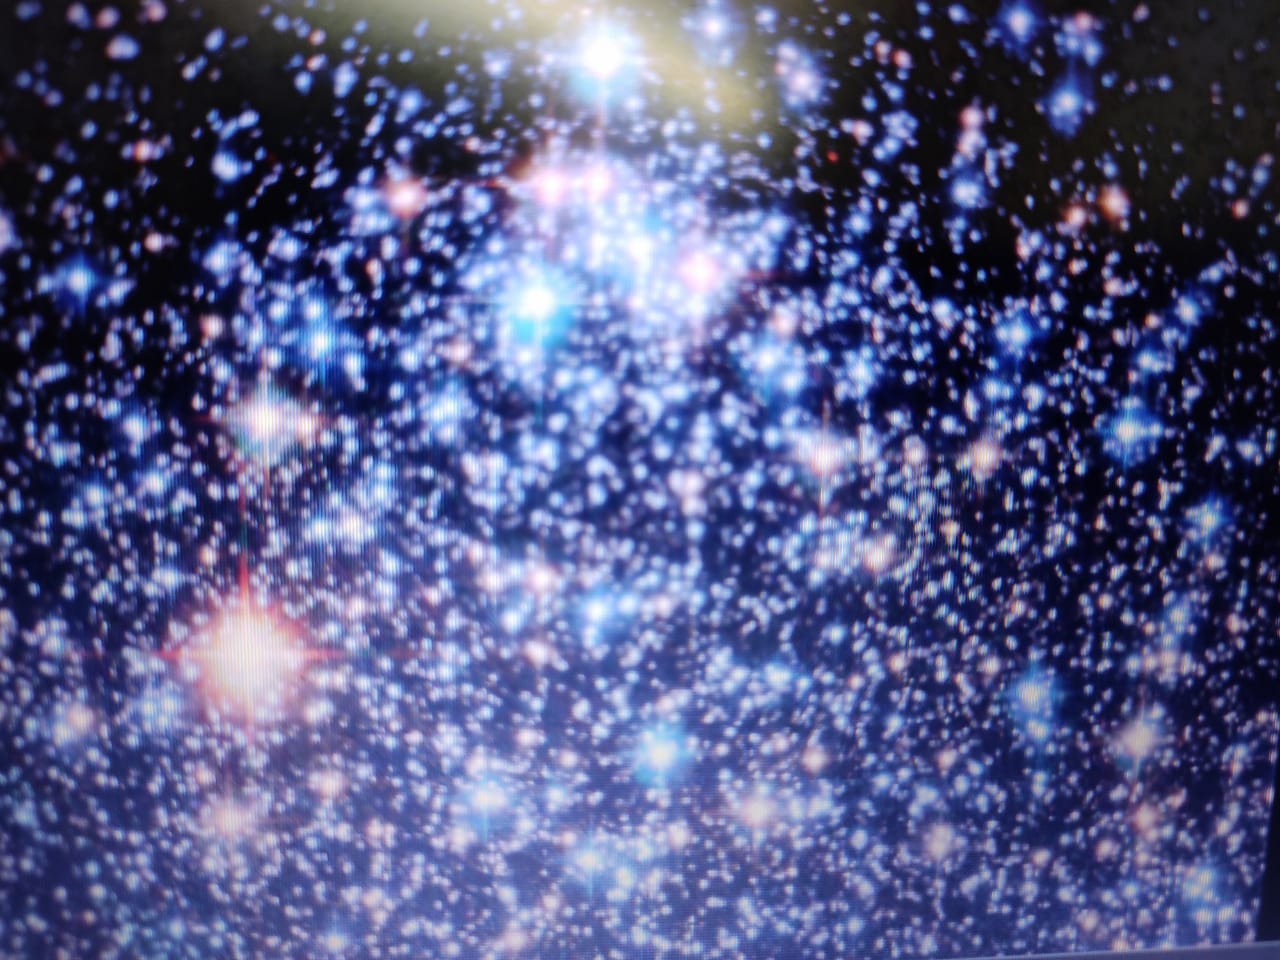 कार्बन प्रचुरता वाले तारे अपने से कम द्रव्यमान वाले तारों से चुराते हैं भारी तत्व